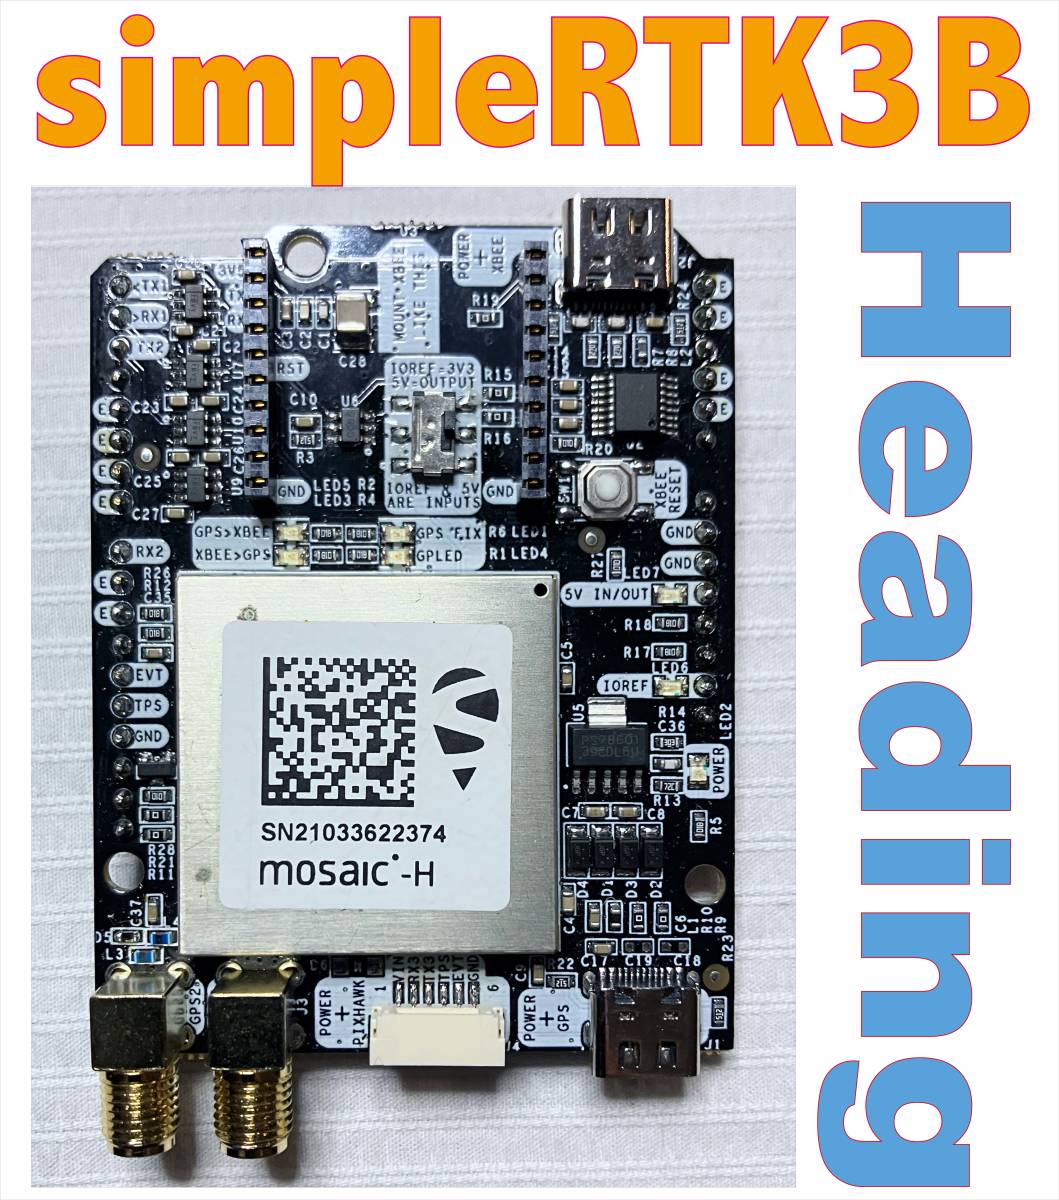 simpleRTK3B Heading　(ArduSimple社製）